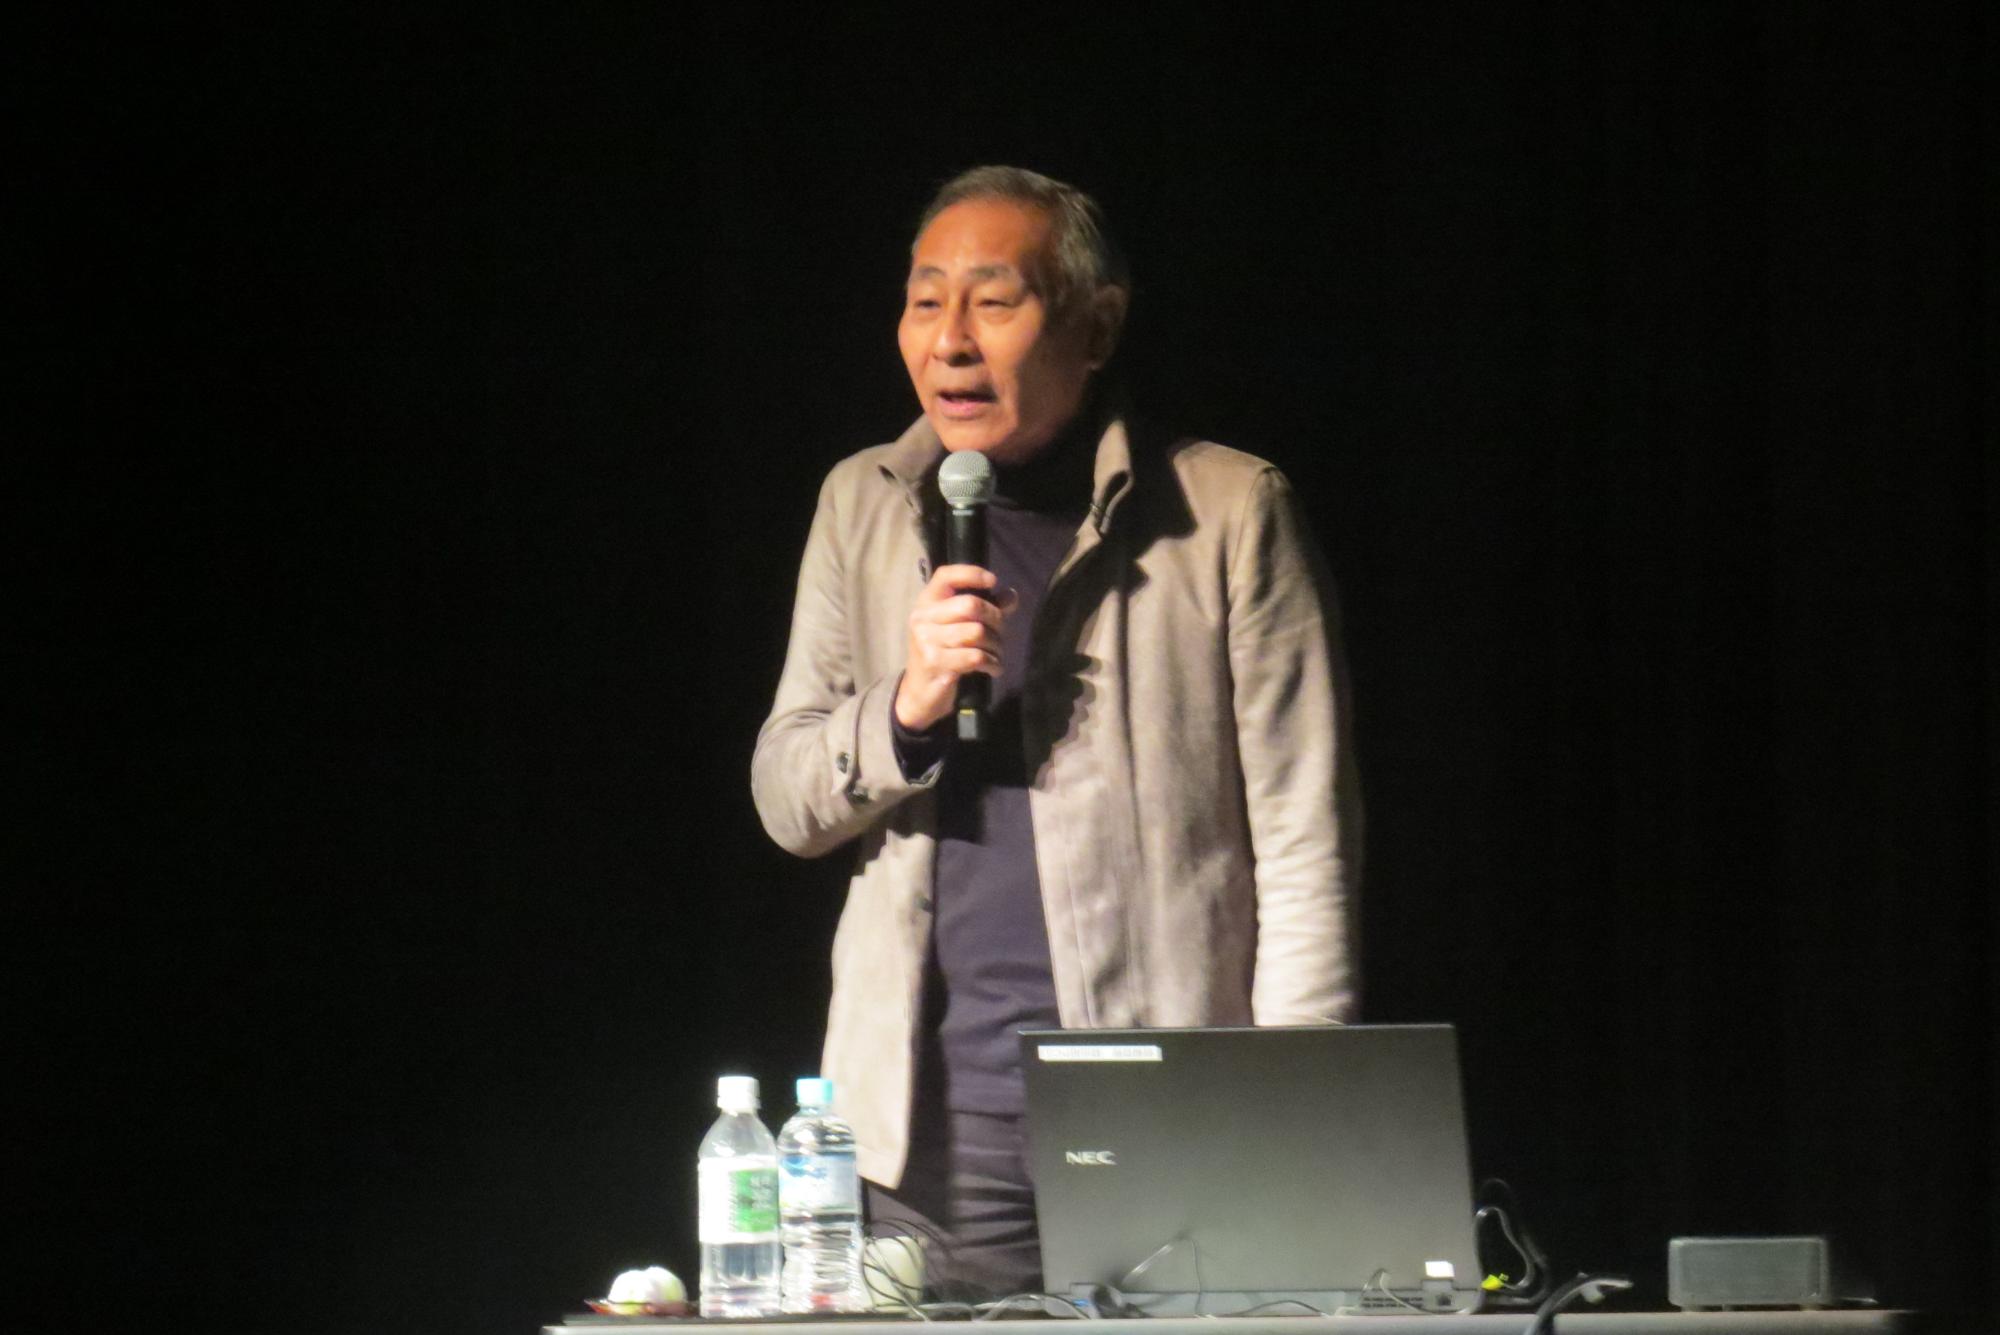 暗い舞台の上でスポットライトに照らされ、夫源病の講演をしている講師の石蔵文信先生の写真